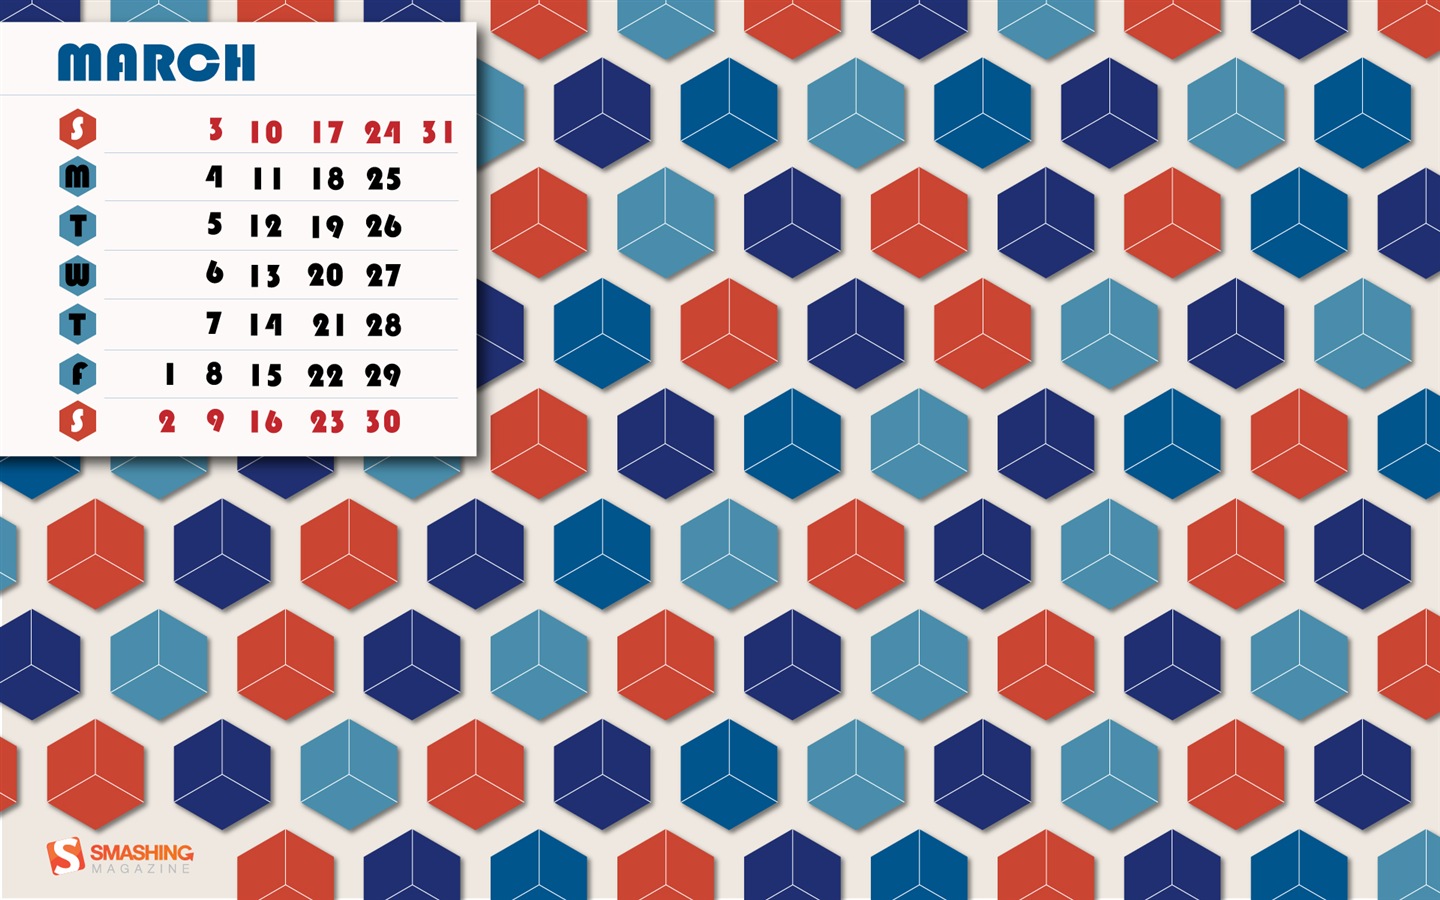 March 2013 calendar wallpaper (1) #10 - 1440x900